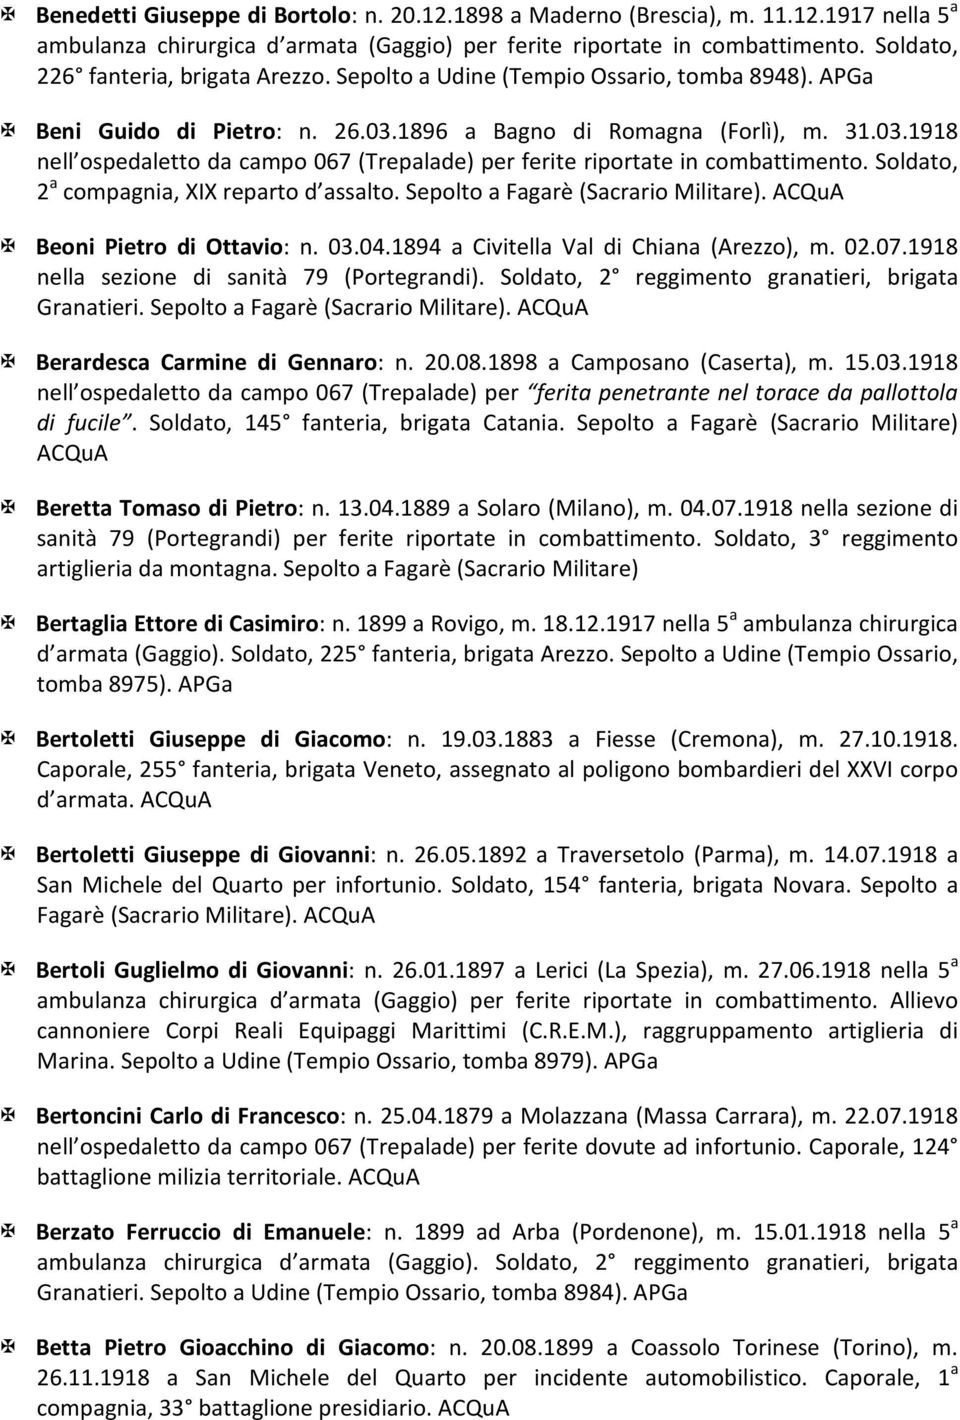 1894 a Civitella Val di Chiana (Arezzo), m. 02.07.1918 nella sezione di sanità 79 (Portegrandi). Soldato, 2 reggimento granatieri, brigata Granatieri. Sepolto a Fagarè (Sacrario Militare).